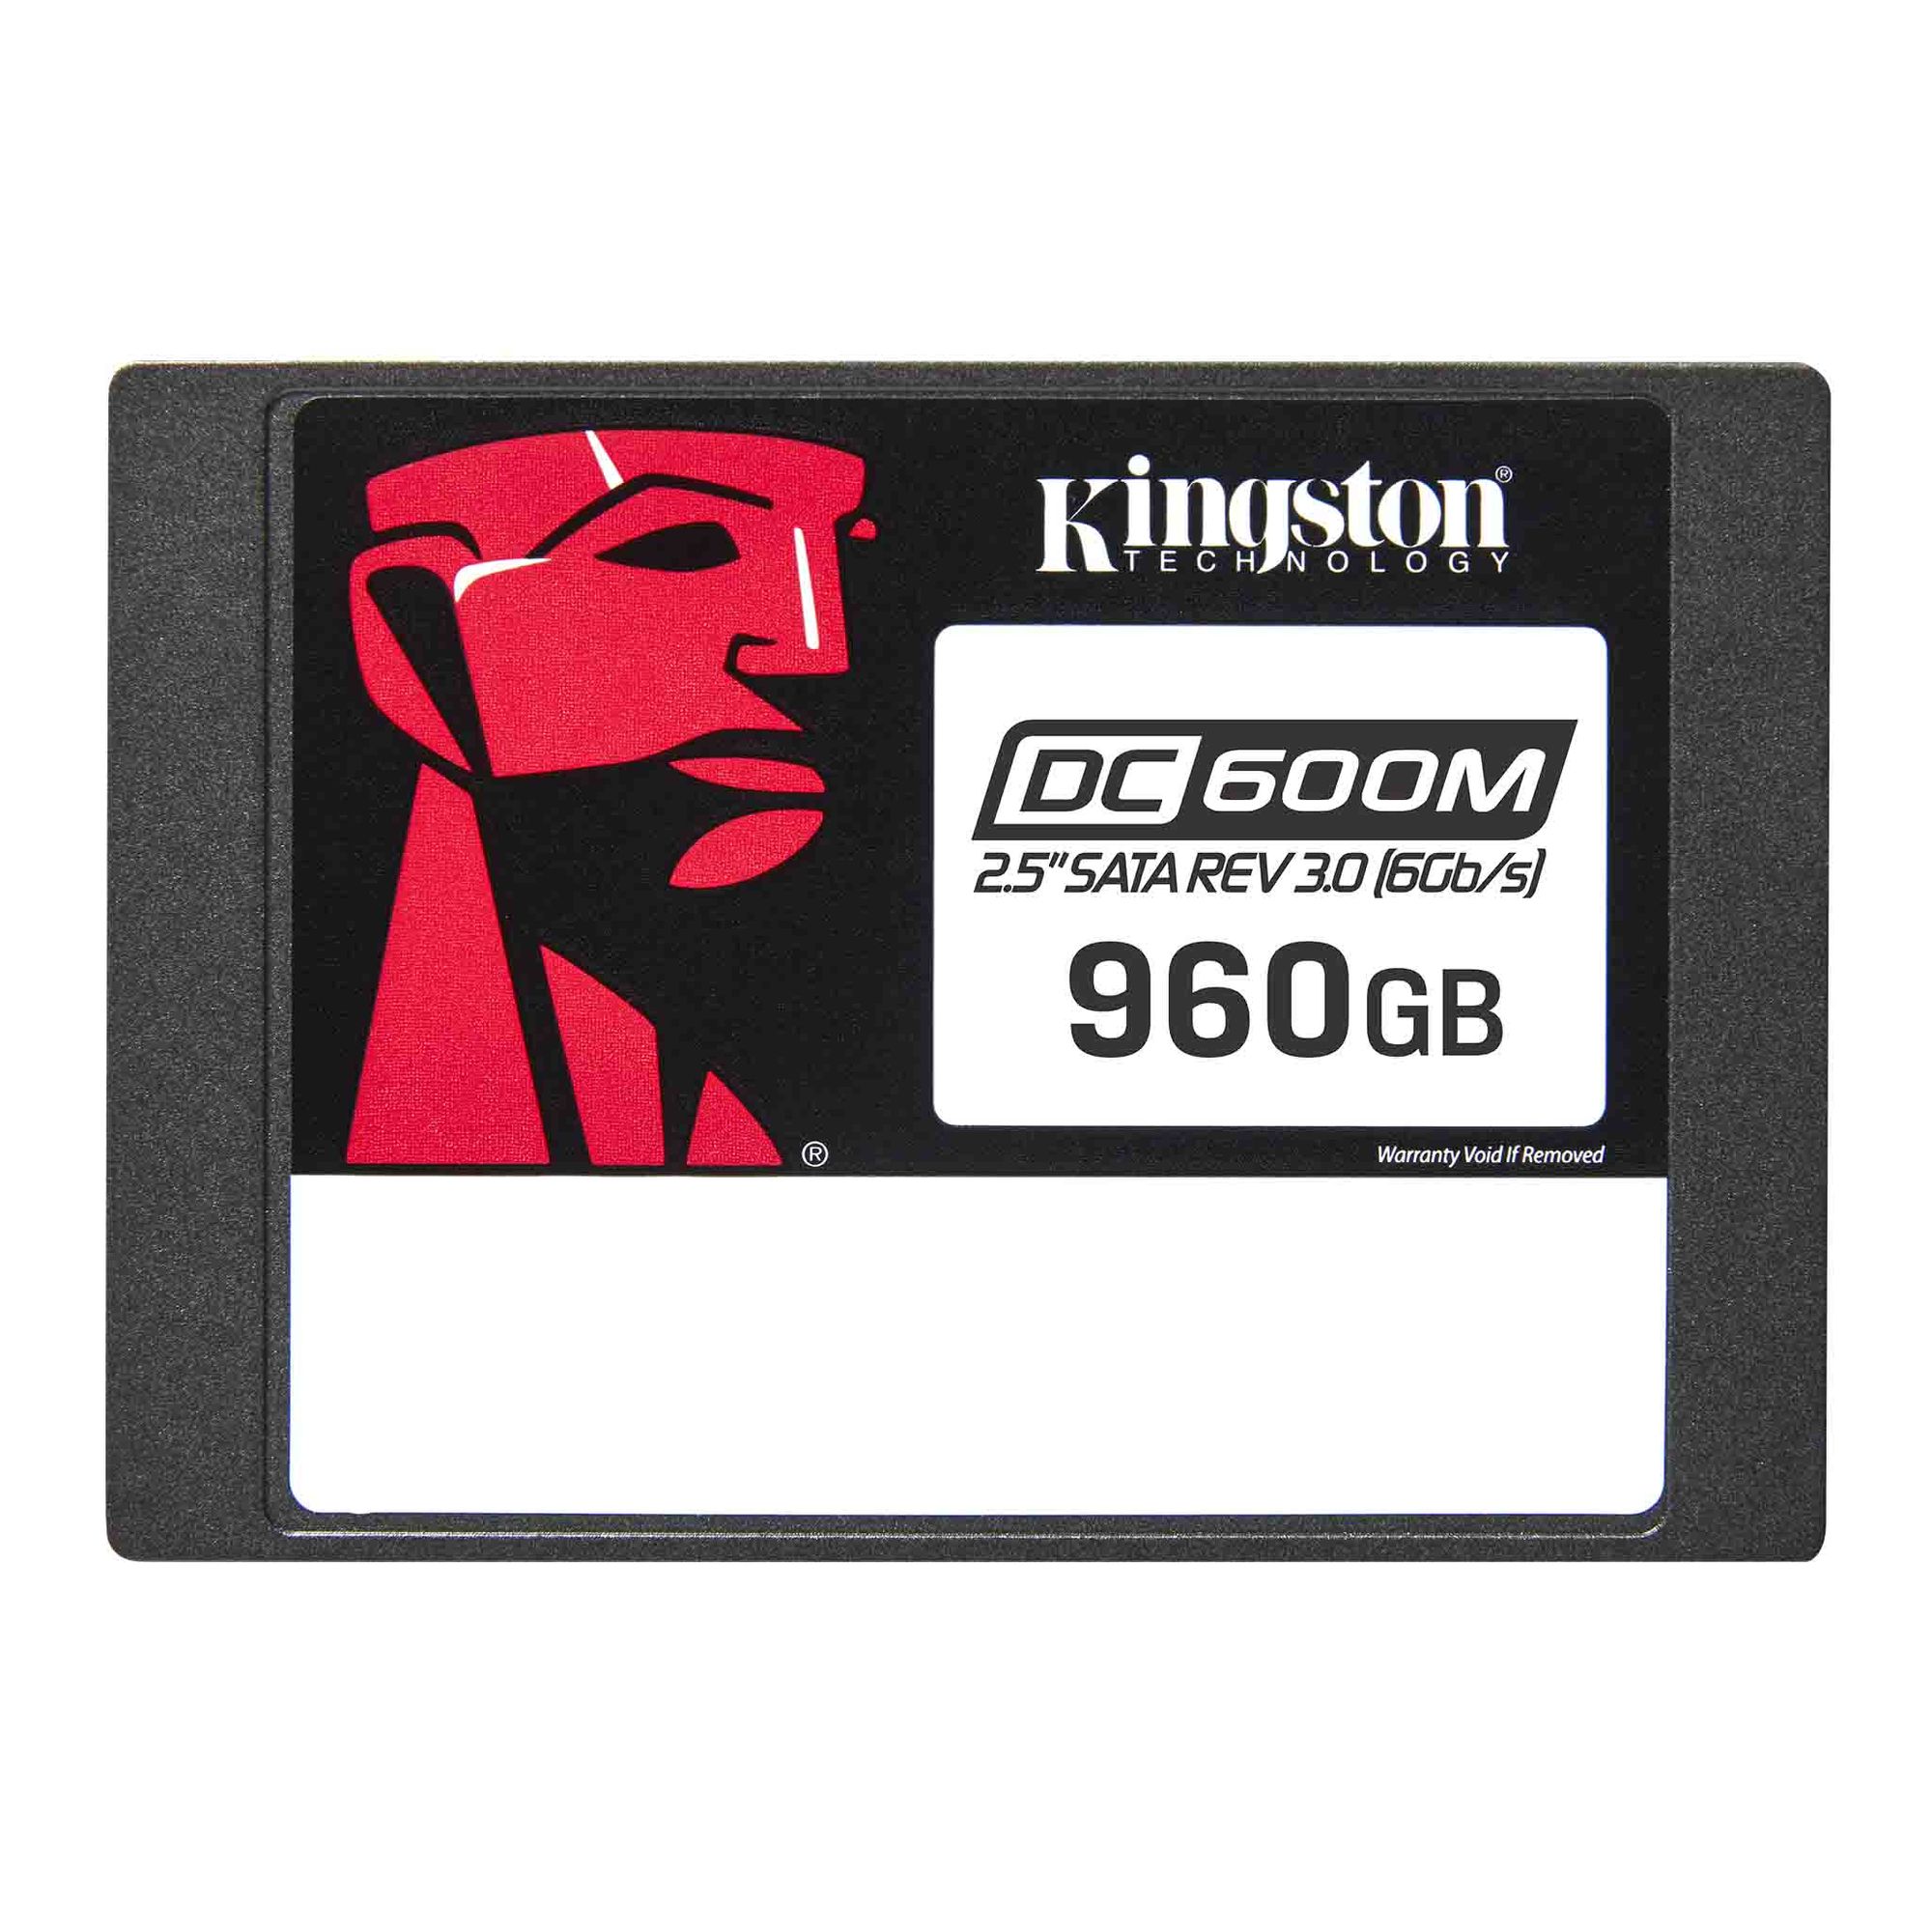 Накопитель SSD 2.5 Kingston Enterprise DC600M SATA 3 960GB (SEDC600M/960G) накопитель ssd kingston 960gb sa400s37 960g